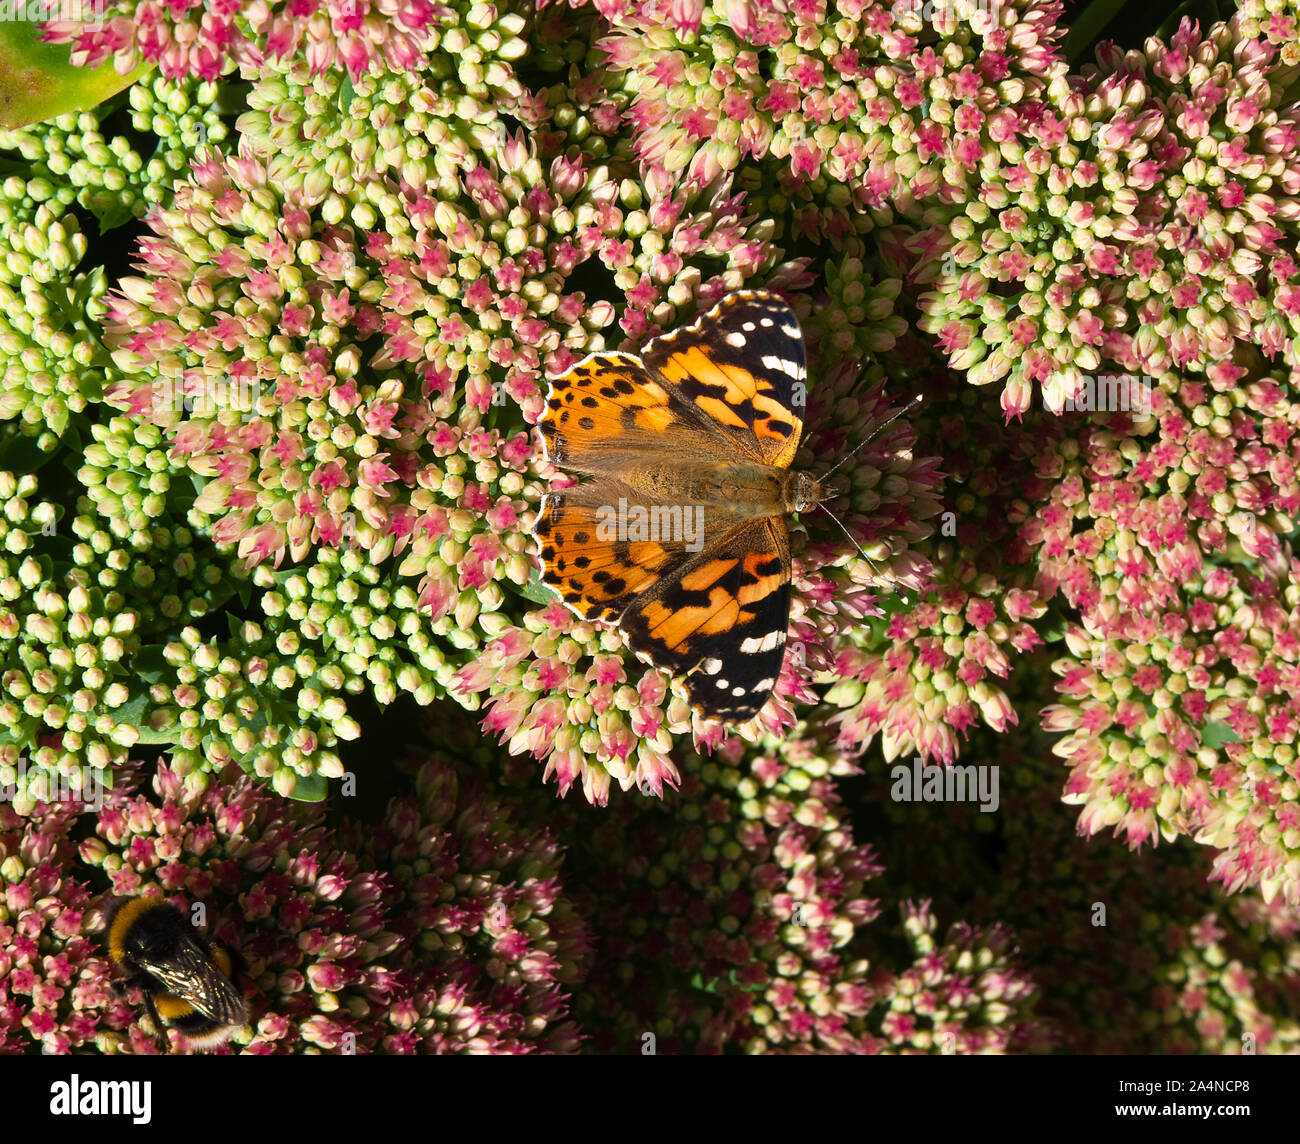 Un papillon lady peint se nourrissage de Nectar sur un Sedum Flower Head automne joie dans un jardin à Sawdon North Yorkshire Angleterre Royaume-Uni Banque D'Images